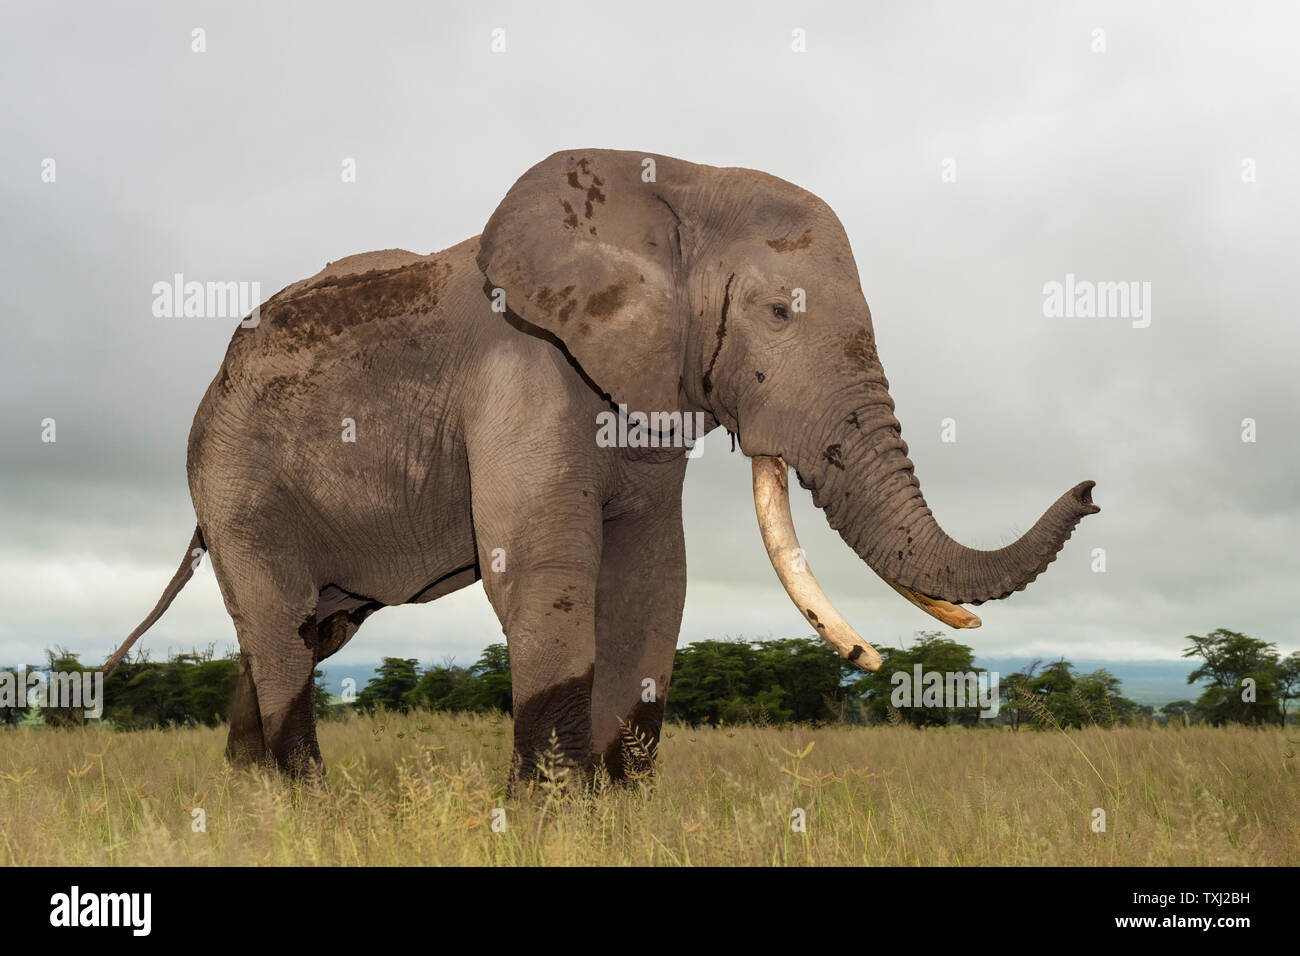 L'éléphant africain (Loxodonta africana) bull a proximité, comité permanent sur l'odeur de savane, avec tronc, parc national d'Amboseli, au Kenya. Banque D'Images